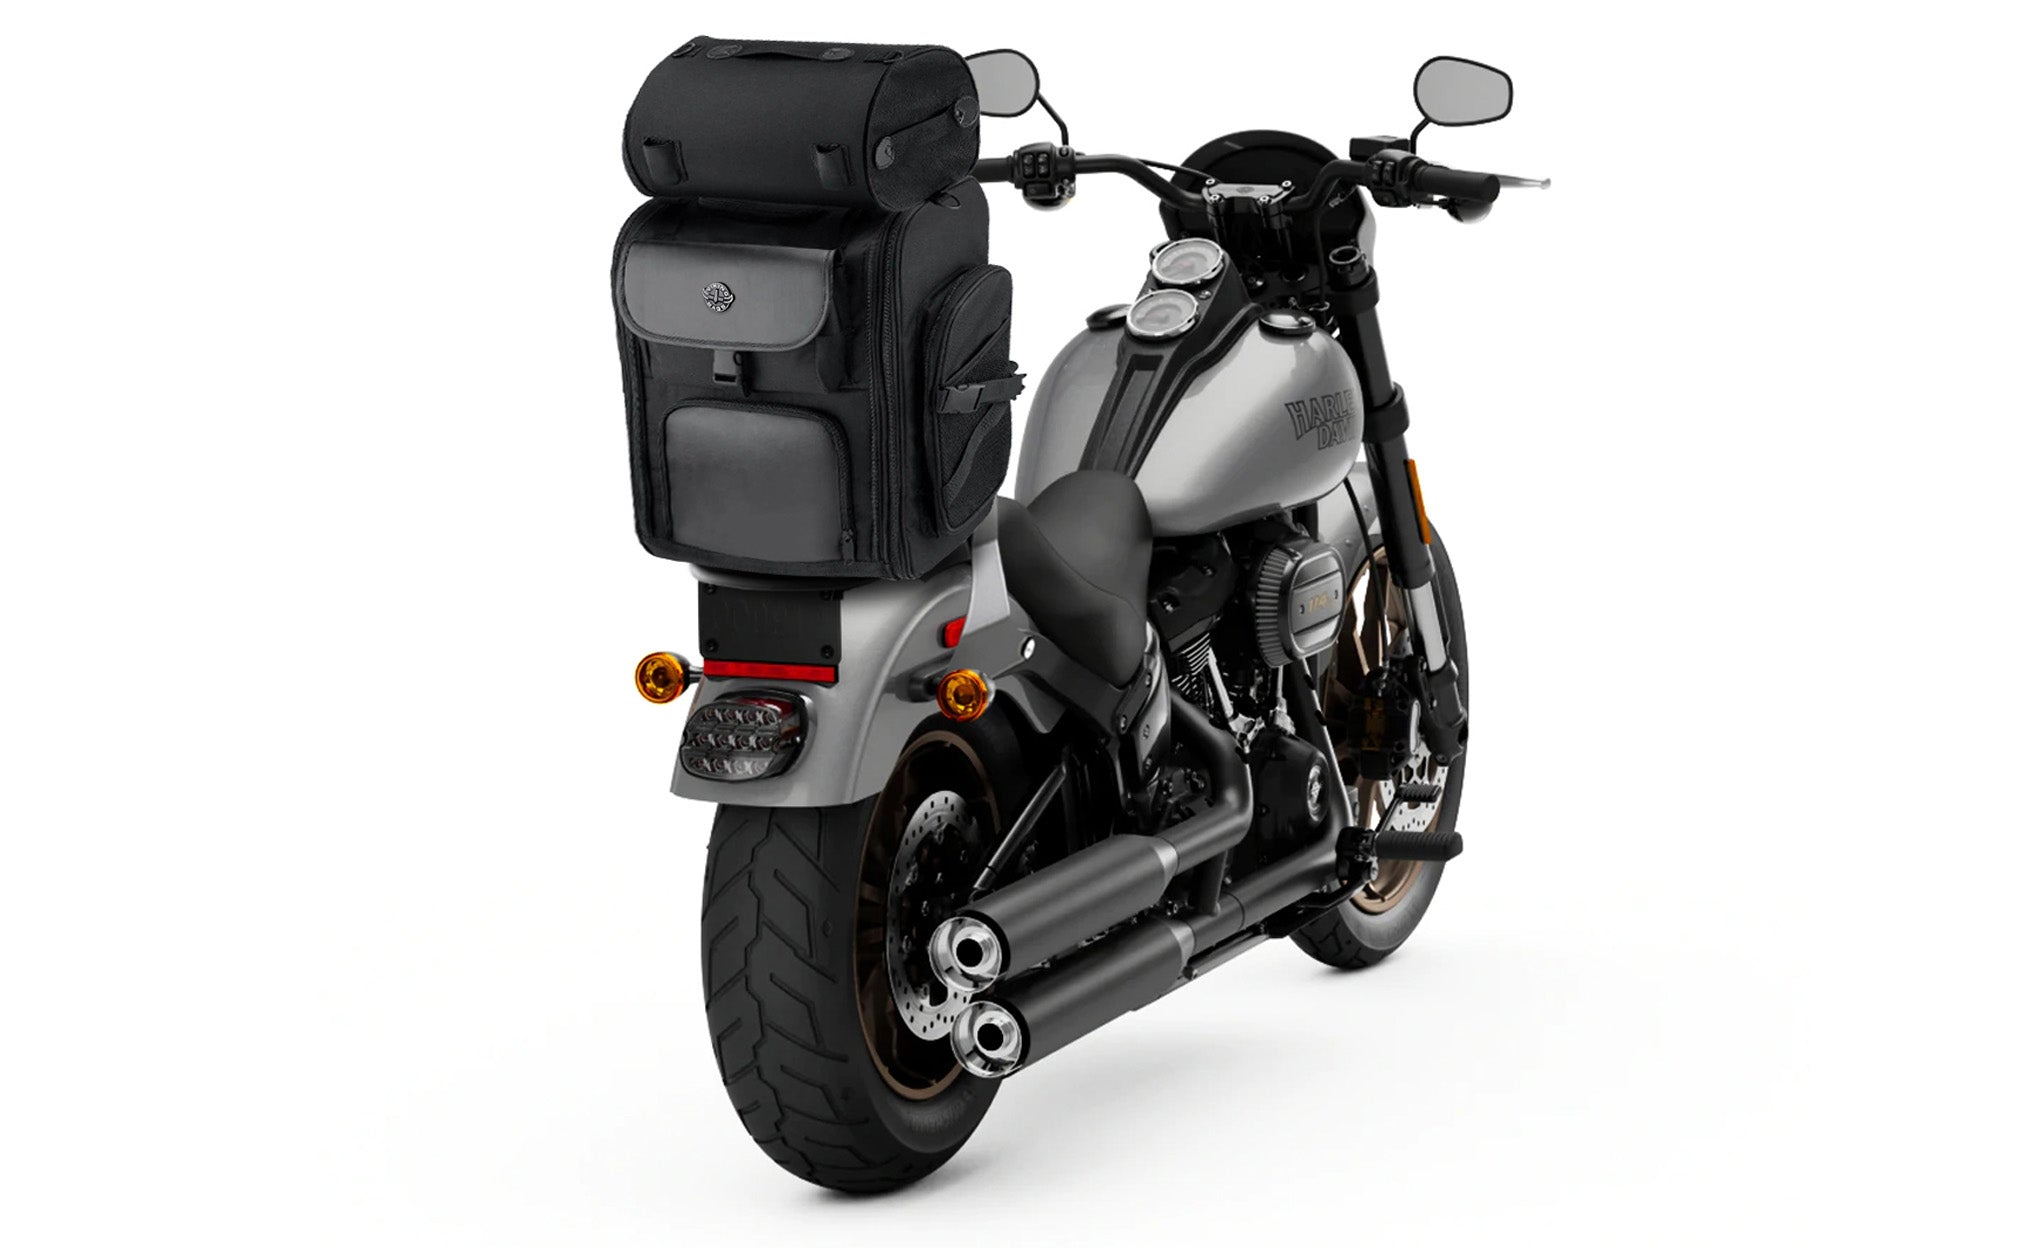 Viking Dwarf Medium Motorcycle Sissy Bar Bag Bag on Bike View @expand